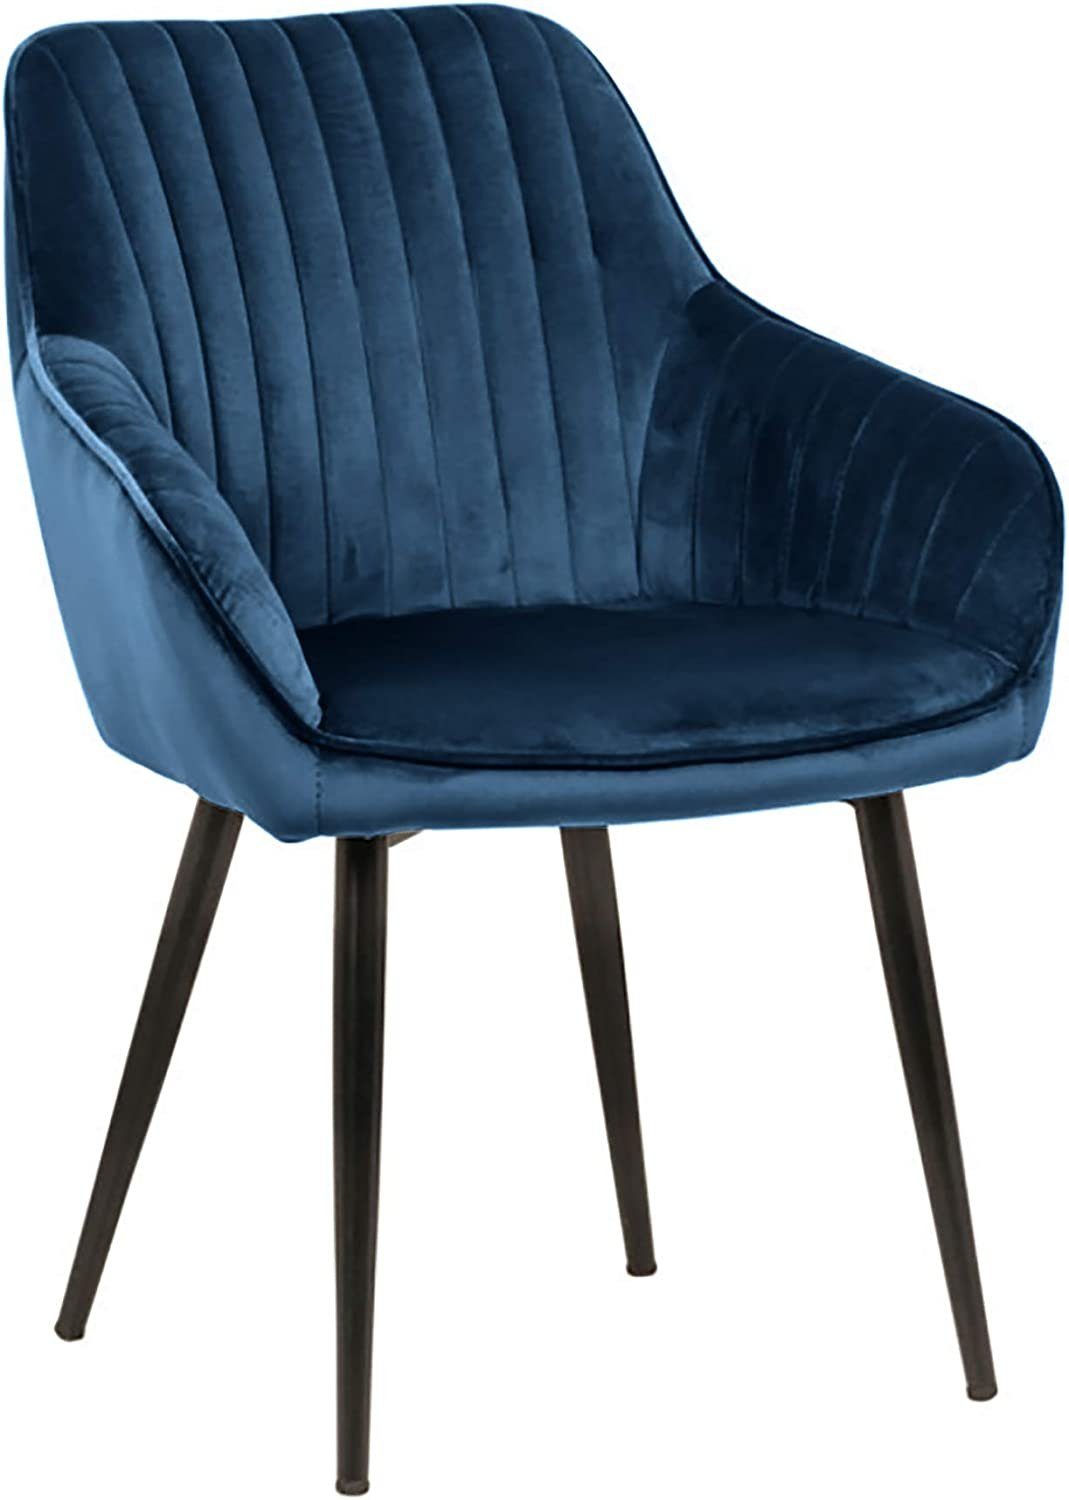 Ziersteppung Armlehnen Stuhl blau Samt Stuhl LebensWohnArt Eleganter MILAN